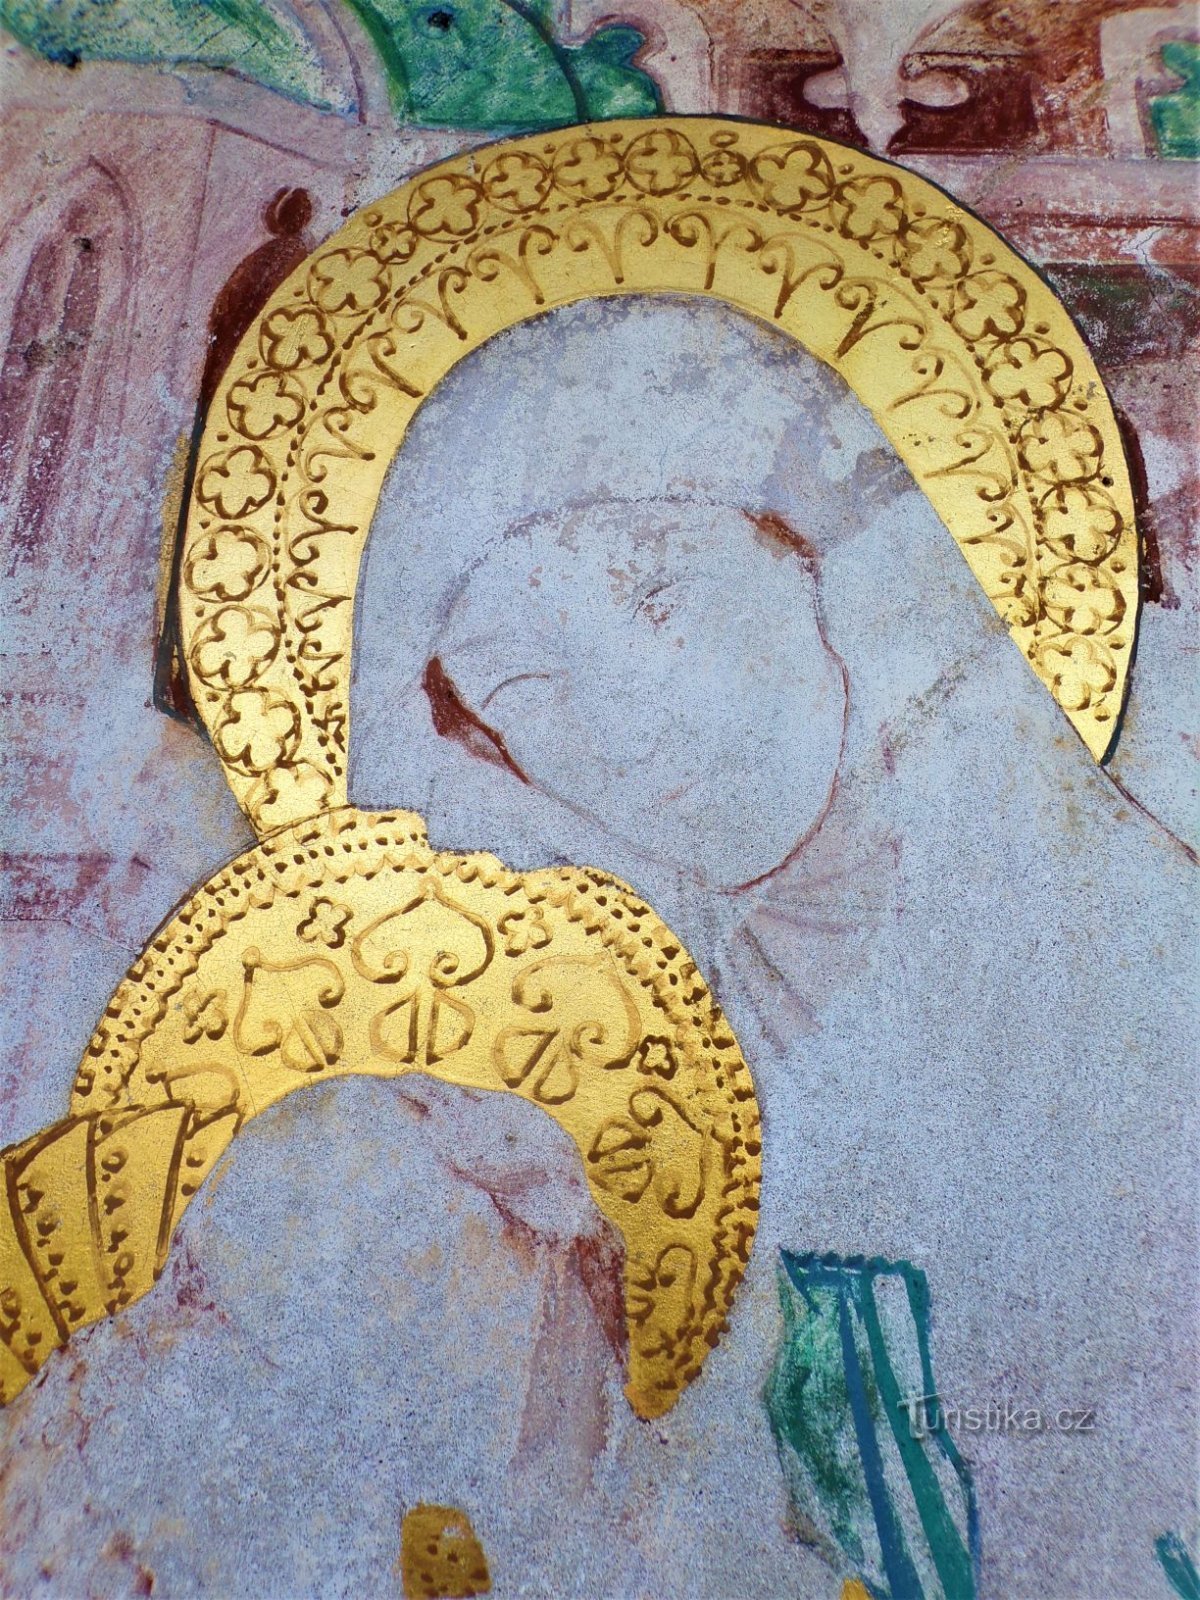 Részlet a St. Anna a festményen a Szent István-kápolnában. Anny (Dobřenice, 8.5.2021. május XNUMX.)